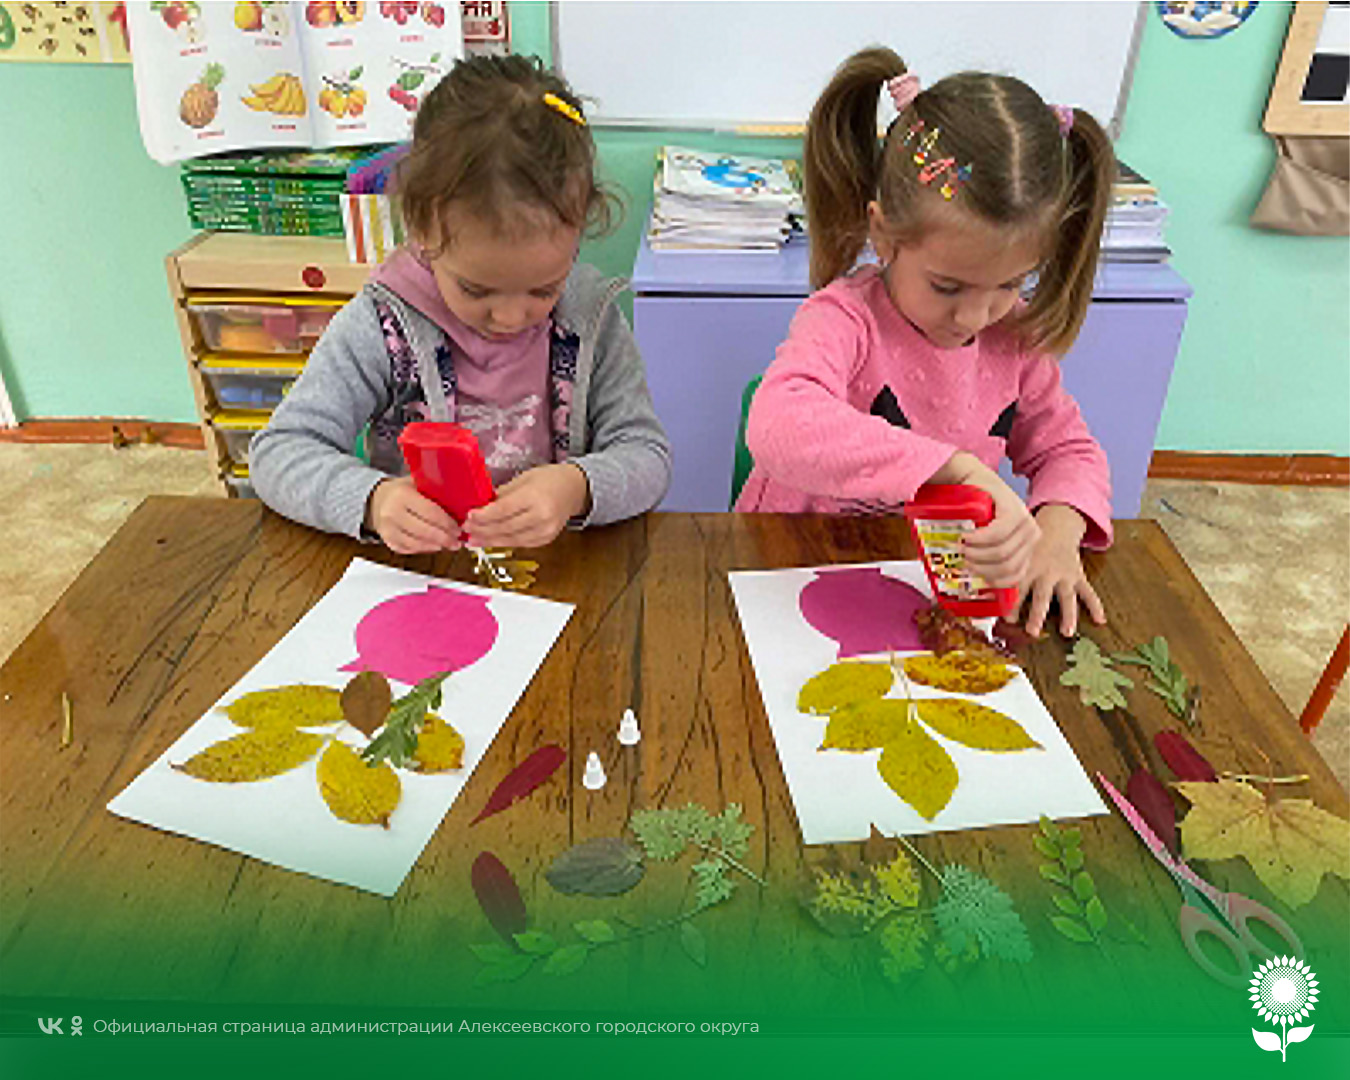 Воспитанники детских садов Алексеевского городского округа сделали гербарий, чтобы в любое время года любоваться осенними листочками.